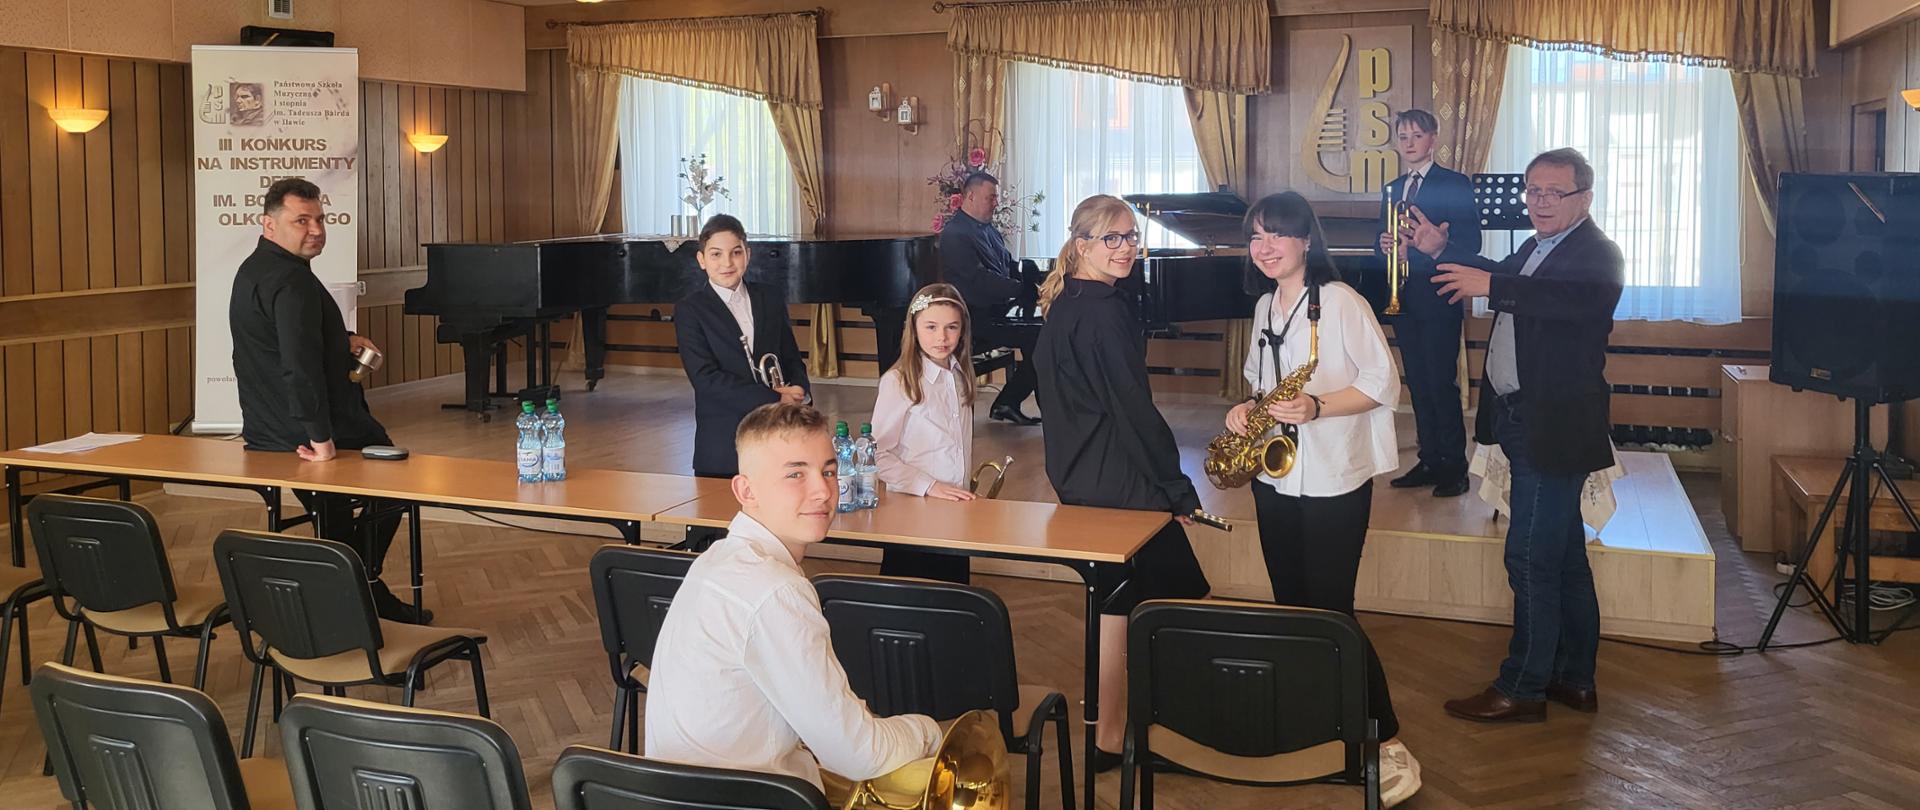 Fotografia przedstawiająca nauczycieli i uczniów z instrumentami w sali koncertowej